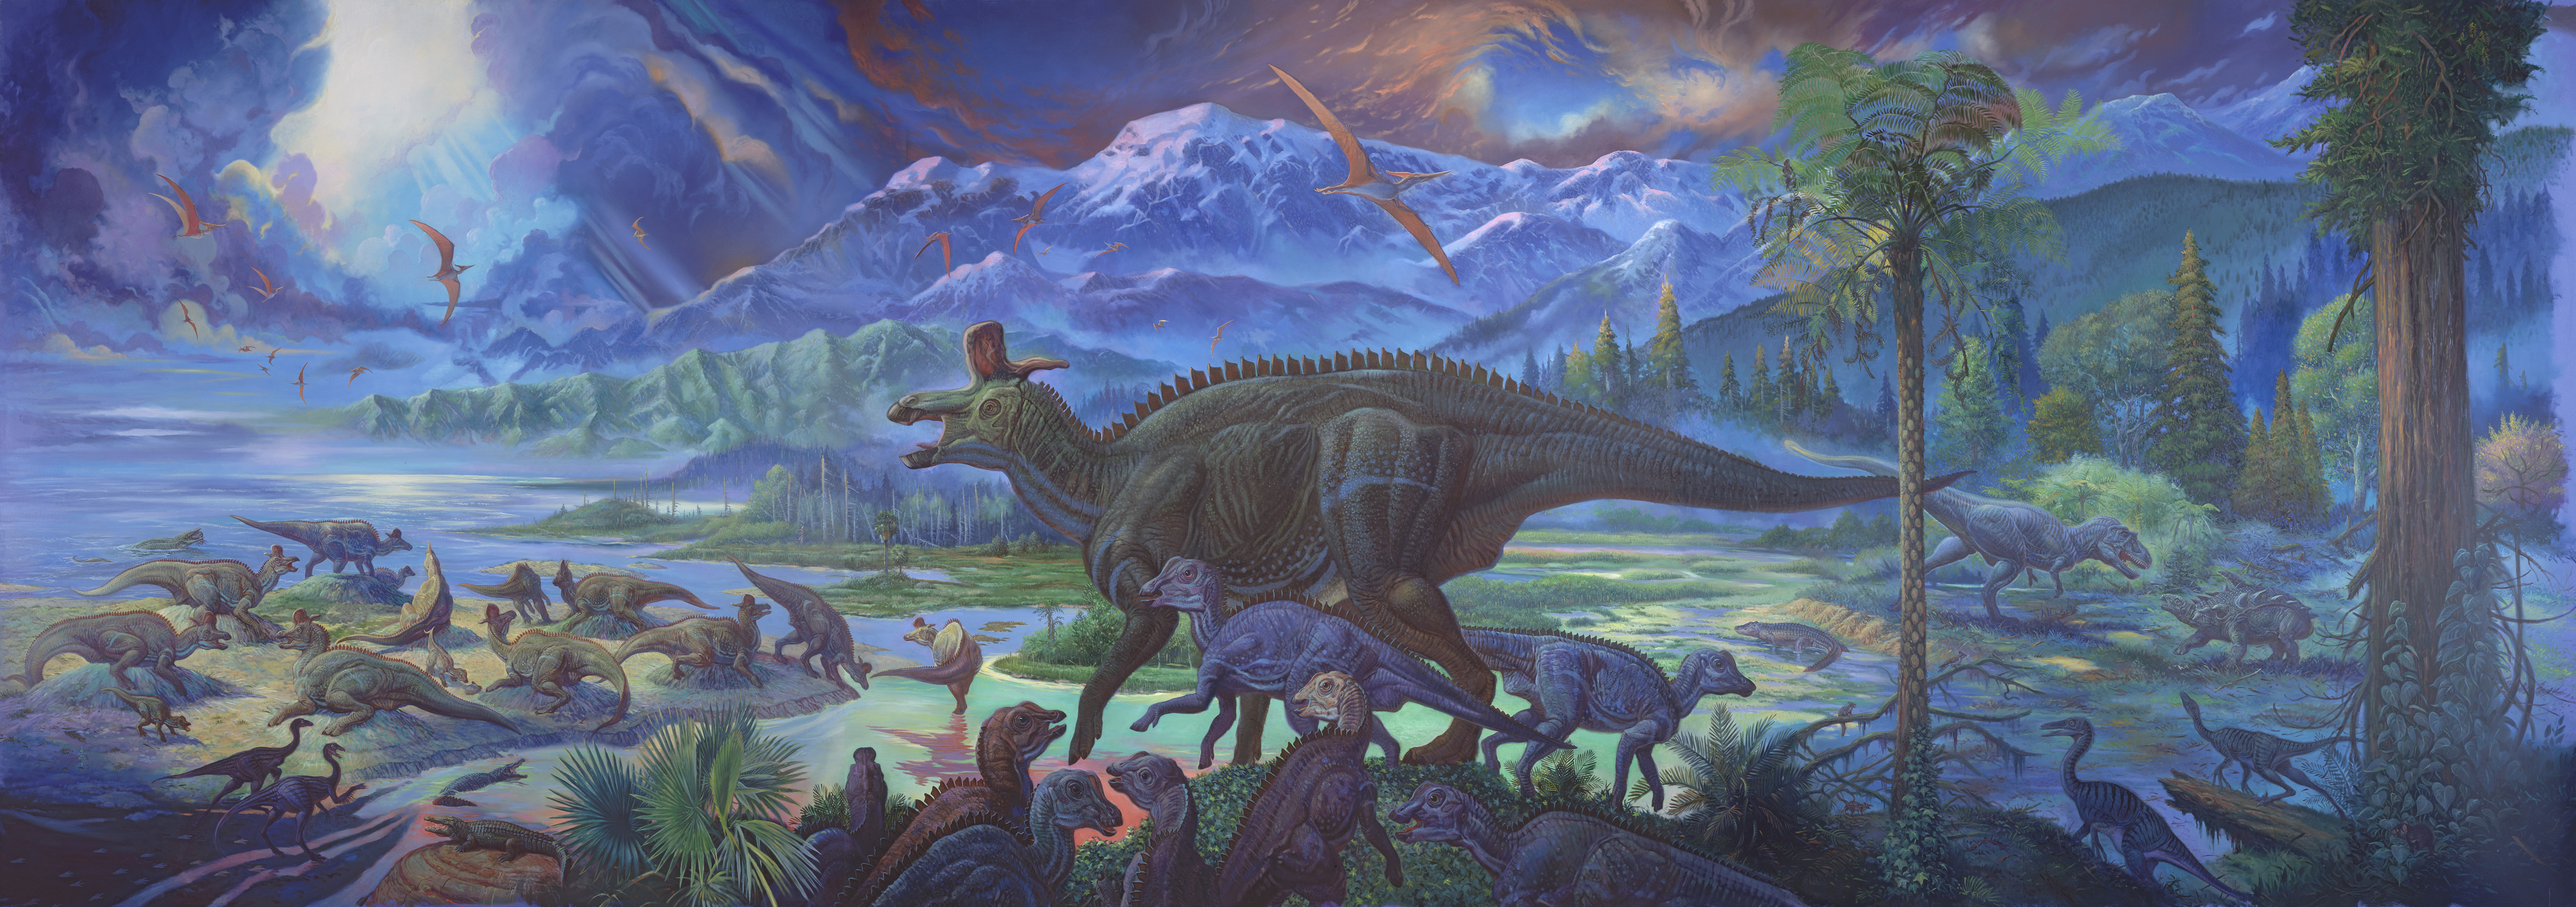 динозавры, древний, доисторический - обои на рабочий стол